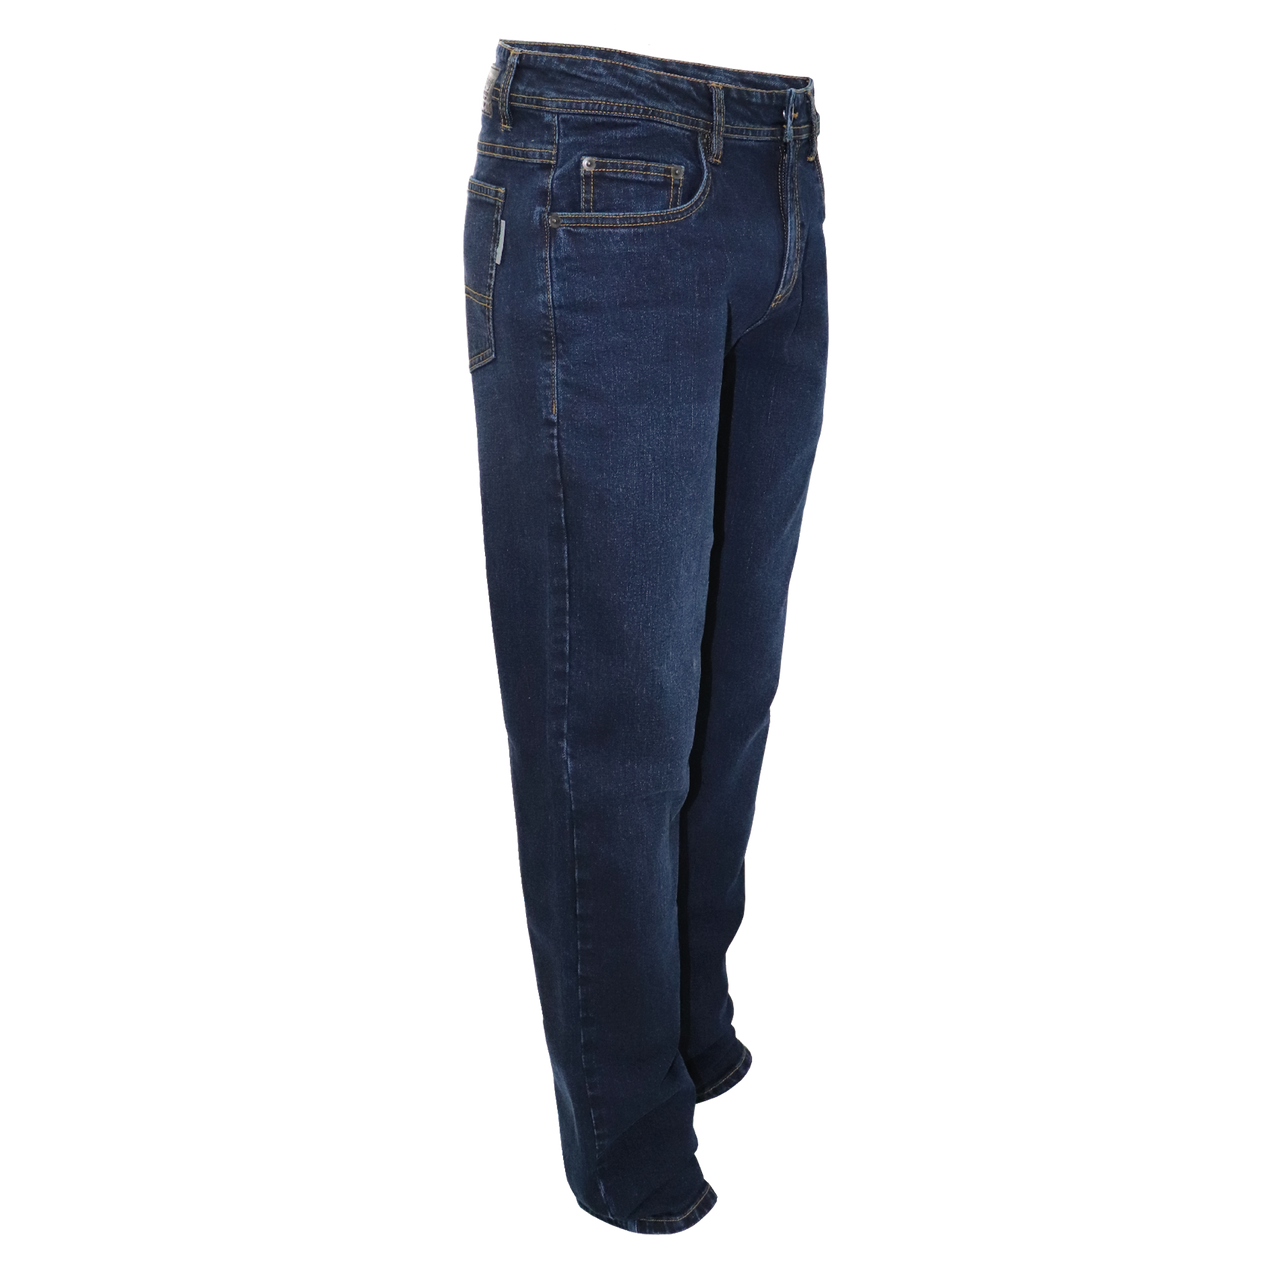 SMR300 - Jeans pour homme extensible||SMR300 - Stretch men’s jeans